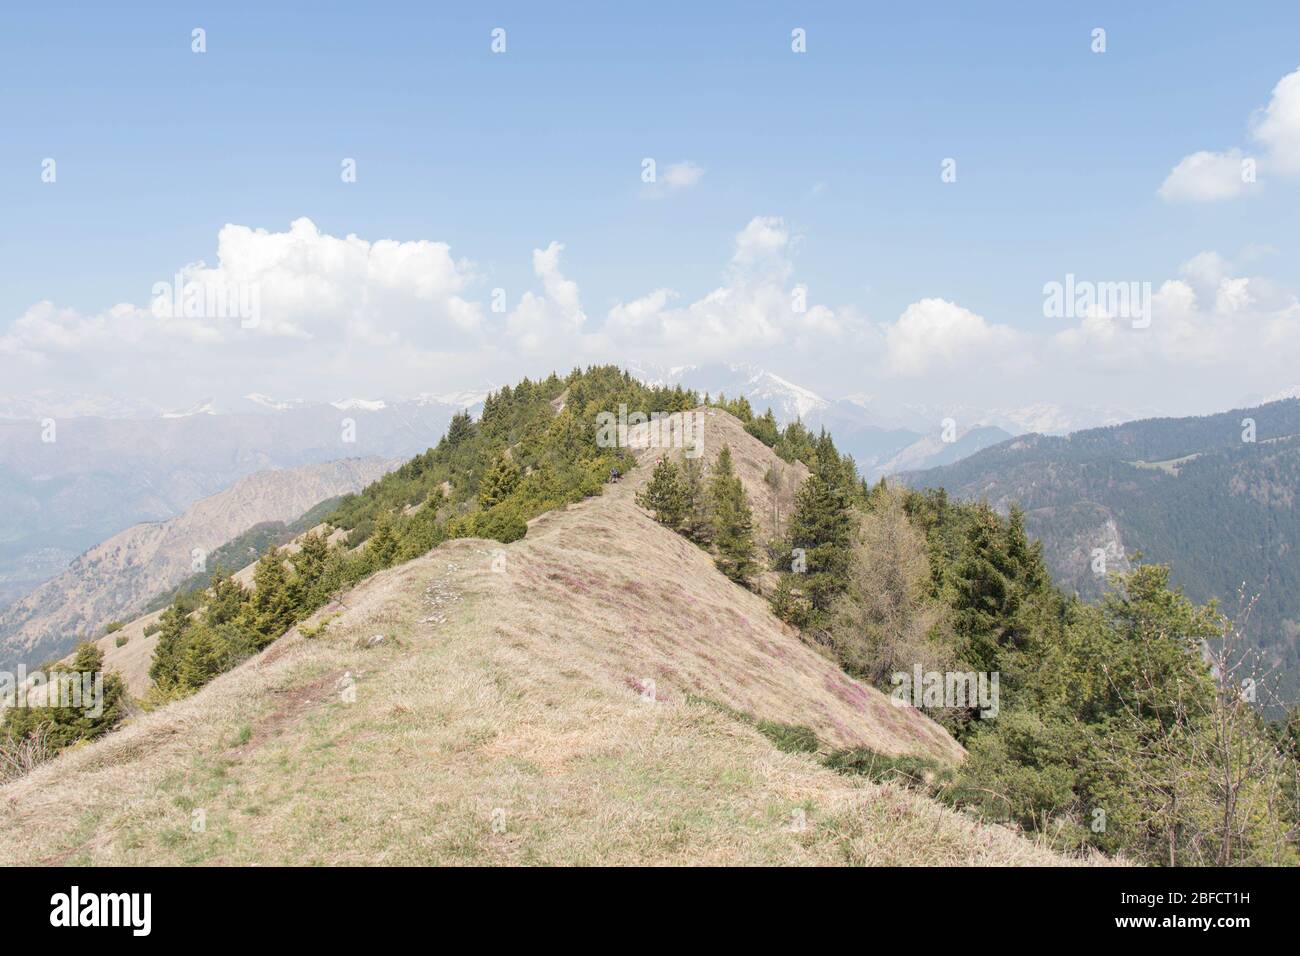 La vista dal paesaggio di montagna. Erba secca su pendii con alberi, cime bianche di montagna e nuvole sullo sfondo. Foto Stock